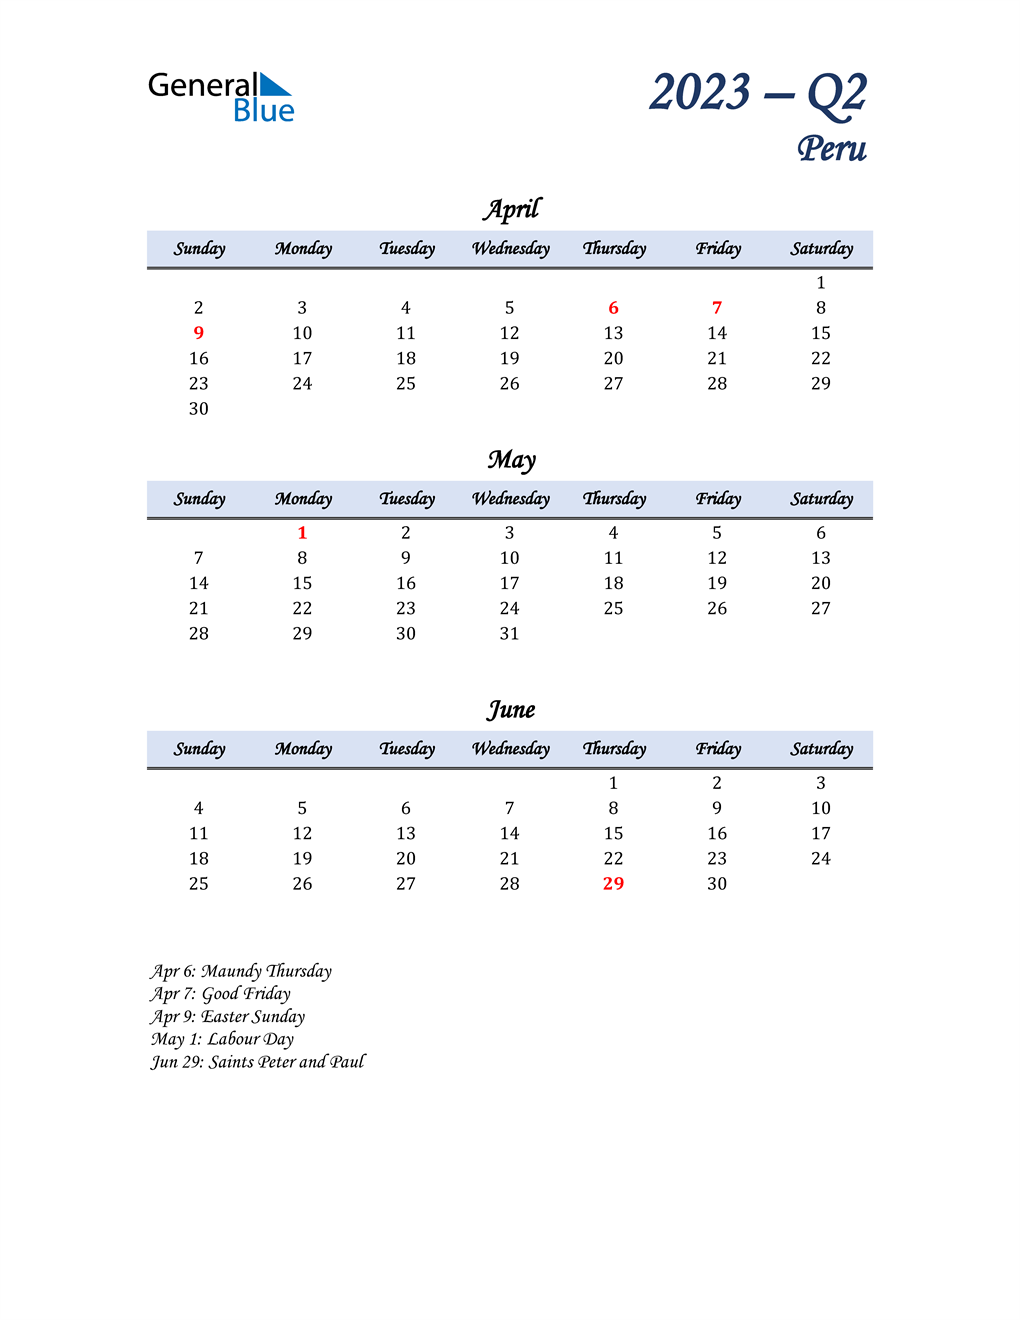  April, May, and June Calendar for Peru